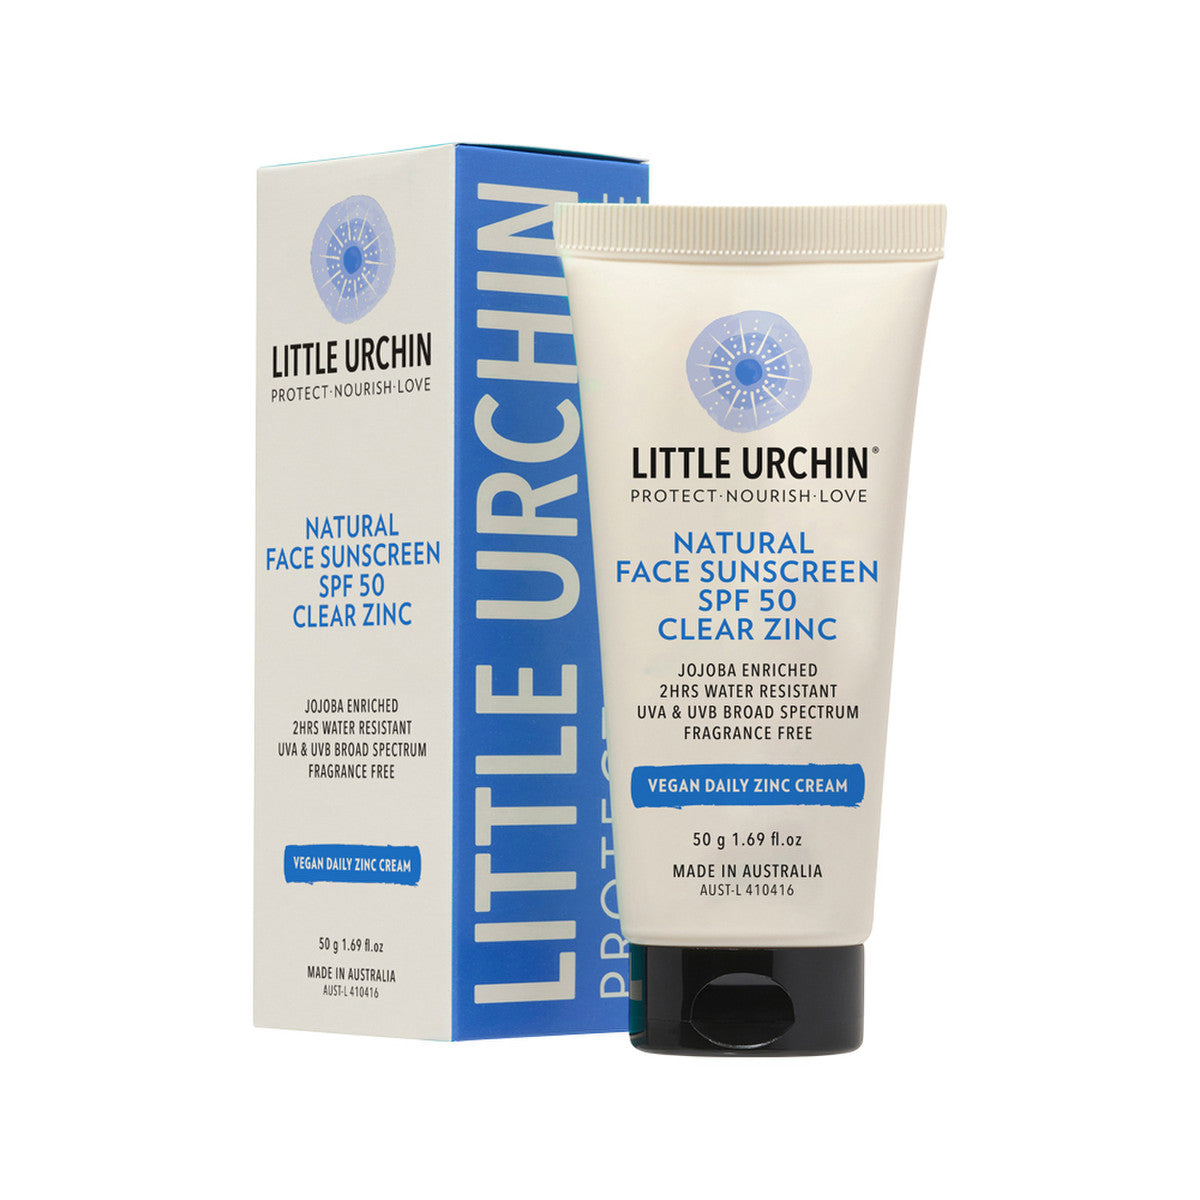 Little Urchin - Natural Face Sunscreen SPF 50 Clear Zinc 50g